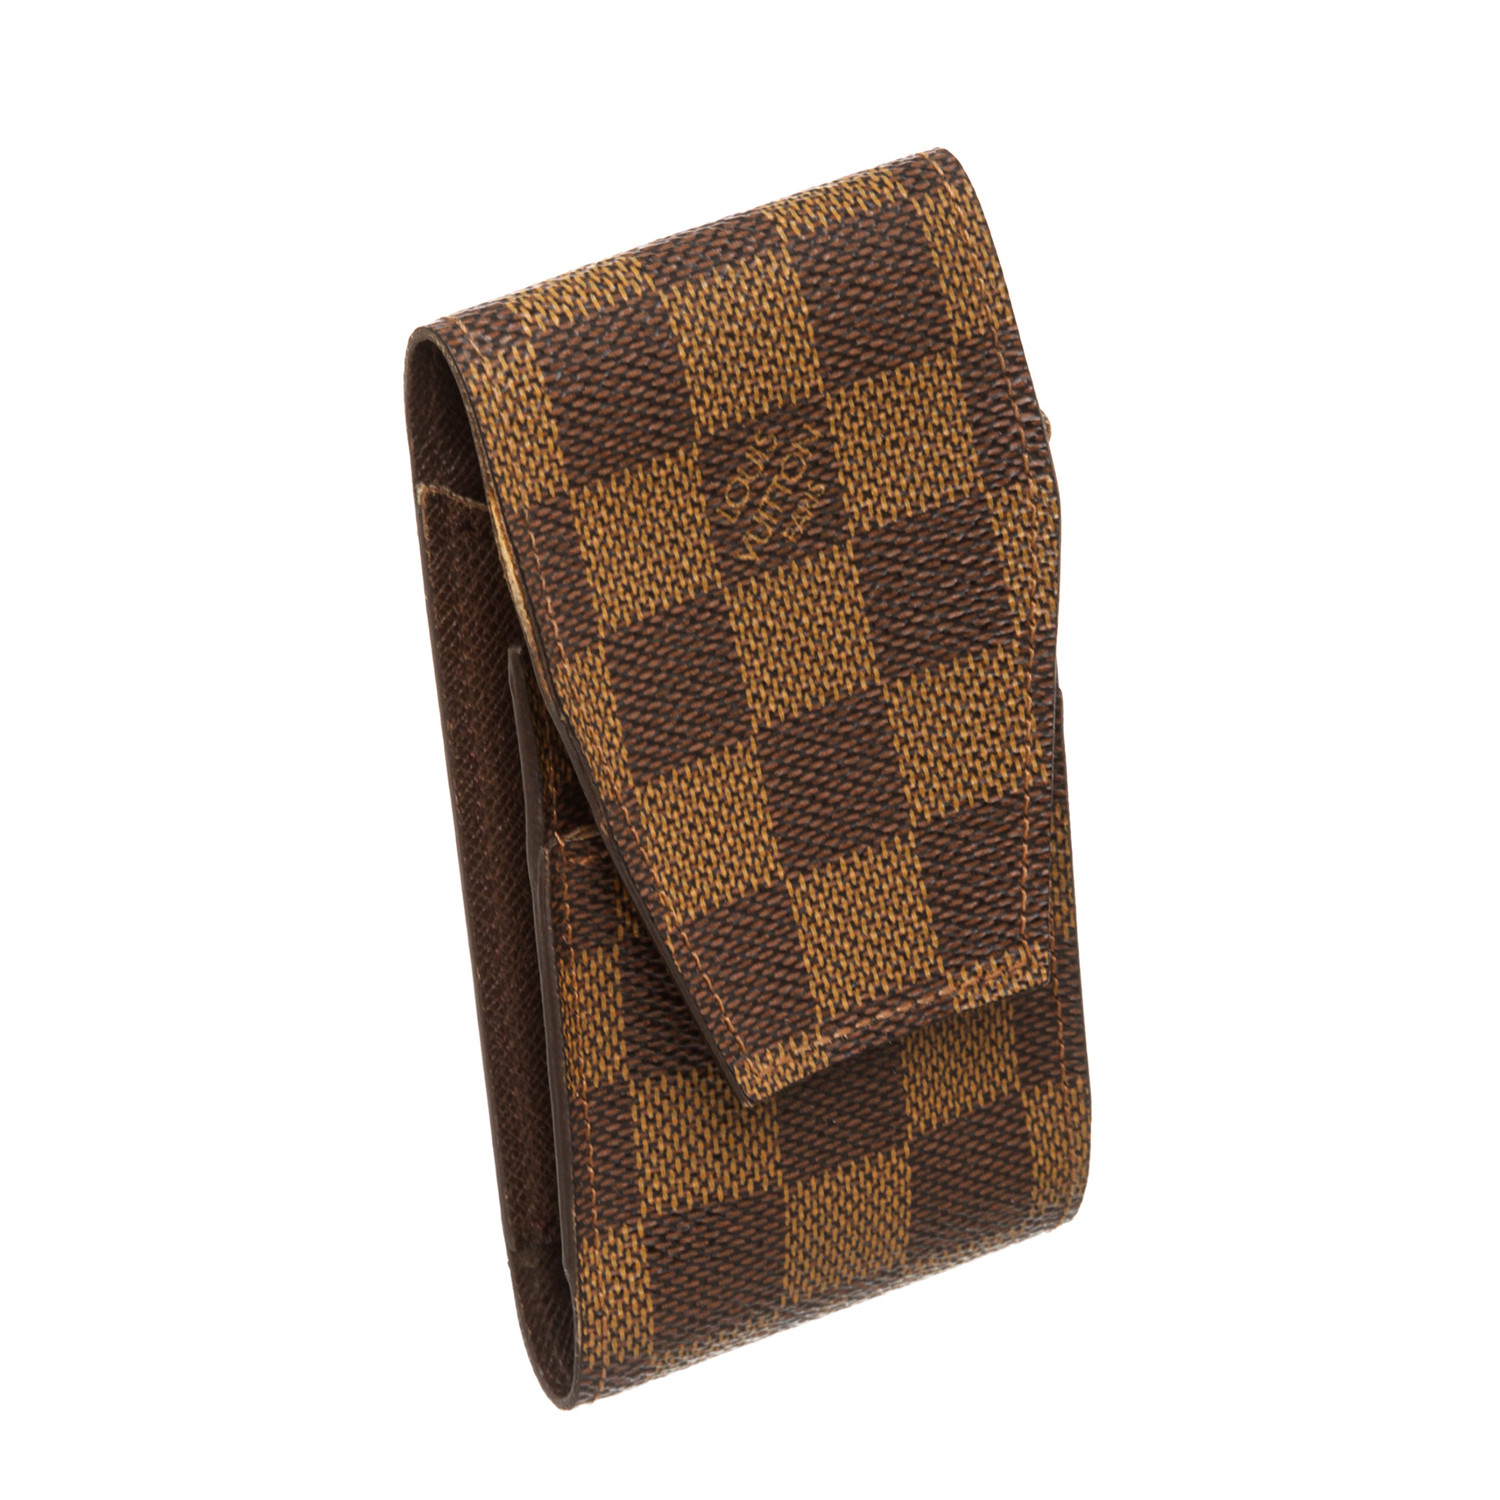 Louis Vuitton // Damier Ebene Canvas Leather Cigarette Holder Case // Pre-Owned - Louis Vuitton ...